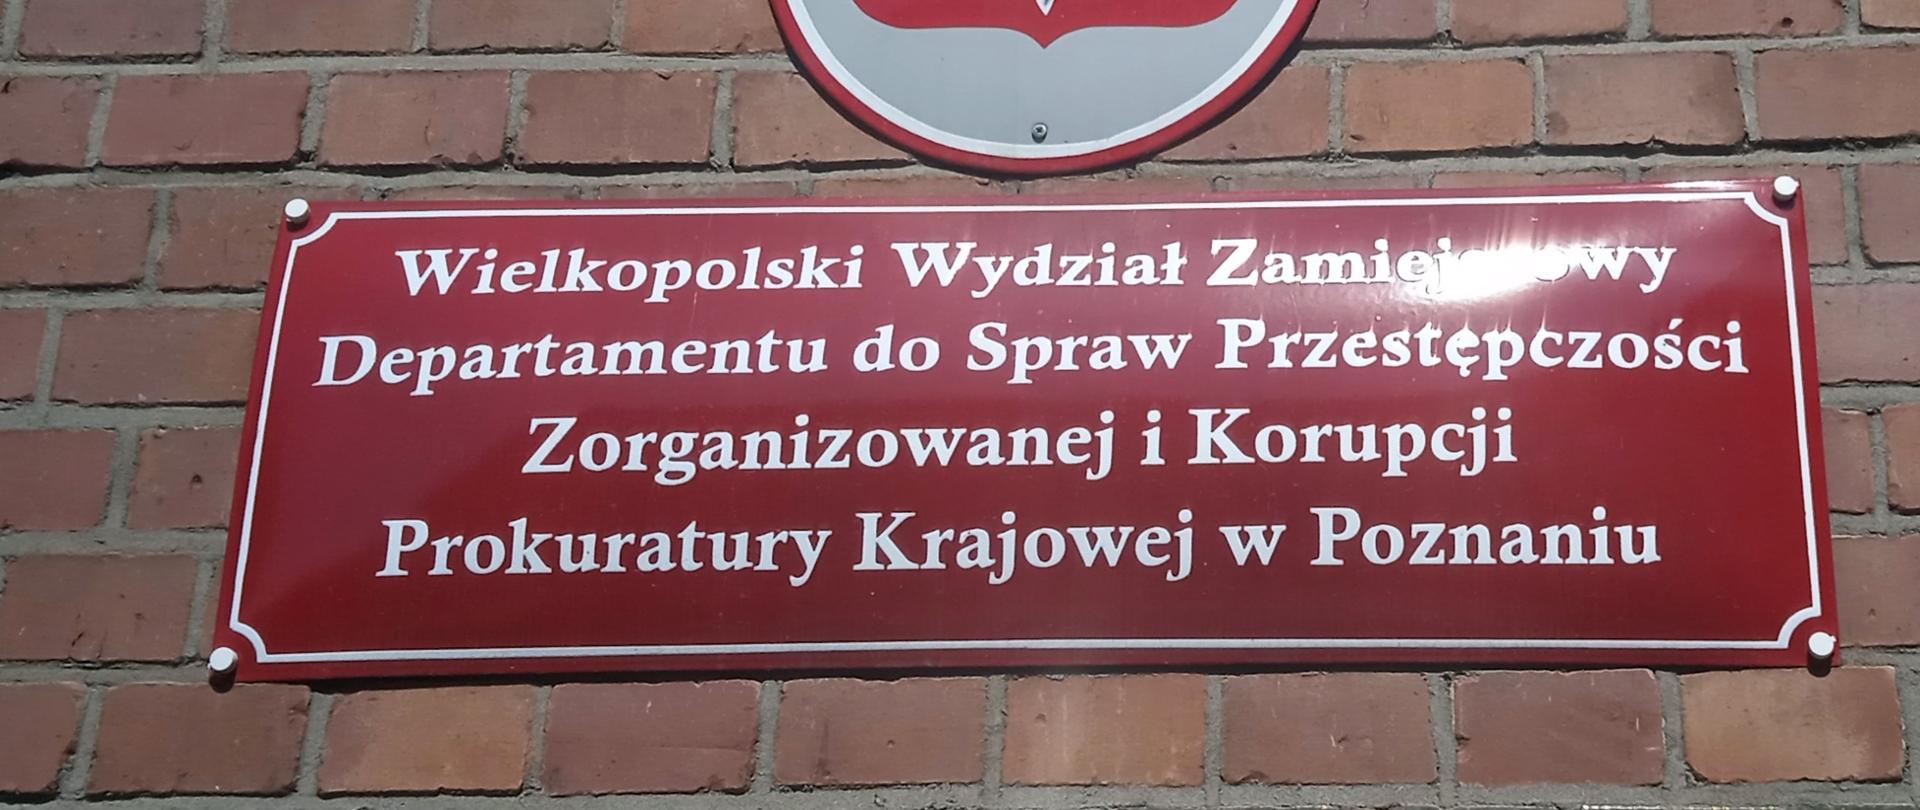 Wielkopolski Wydział Zamiejscowy Departamentu ds Przestępczości Zorganizowanej i Korupcji Prokuratury Krajowej w Poznaniu